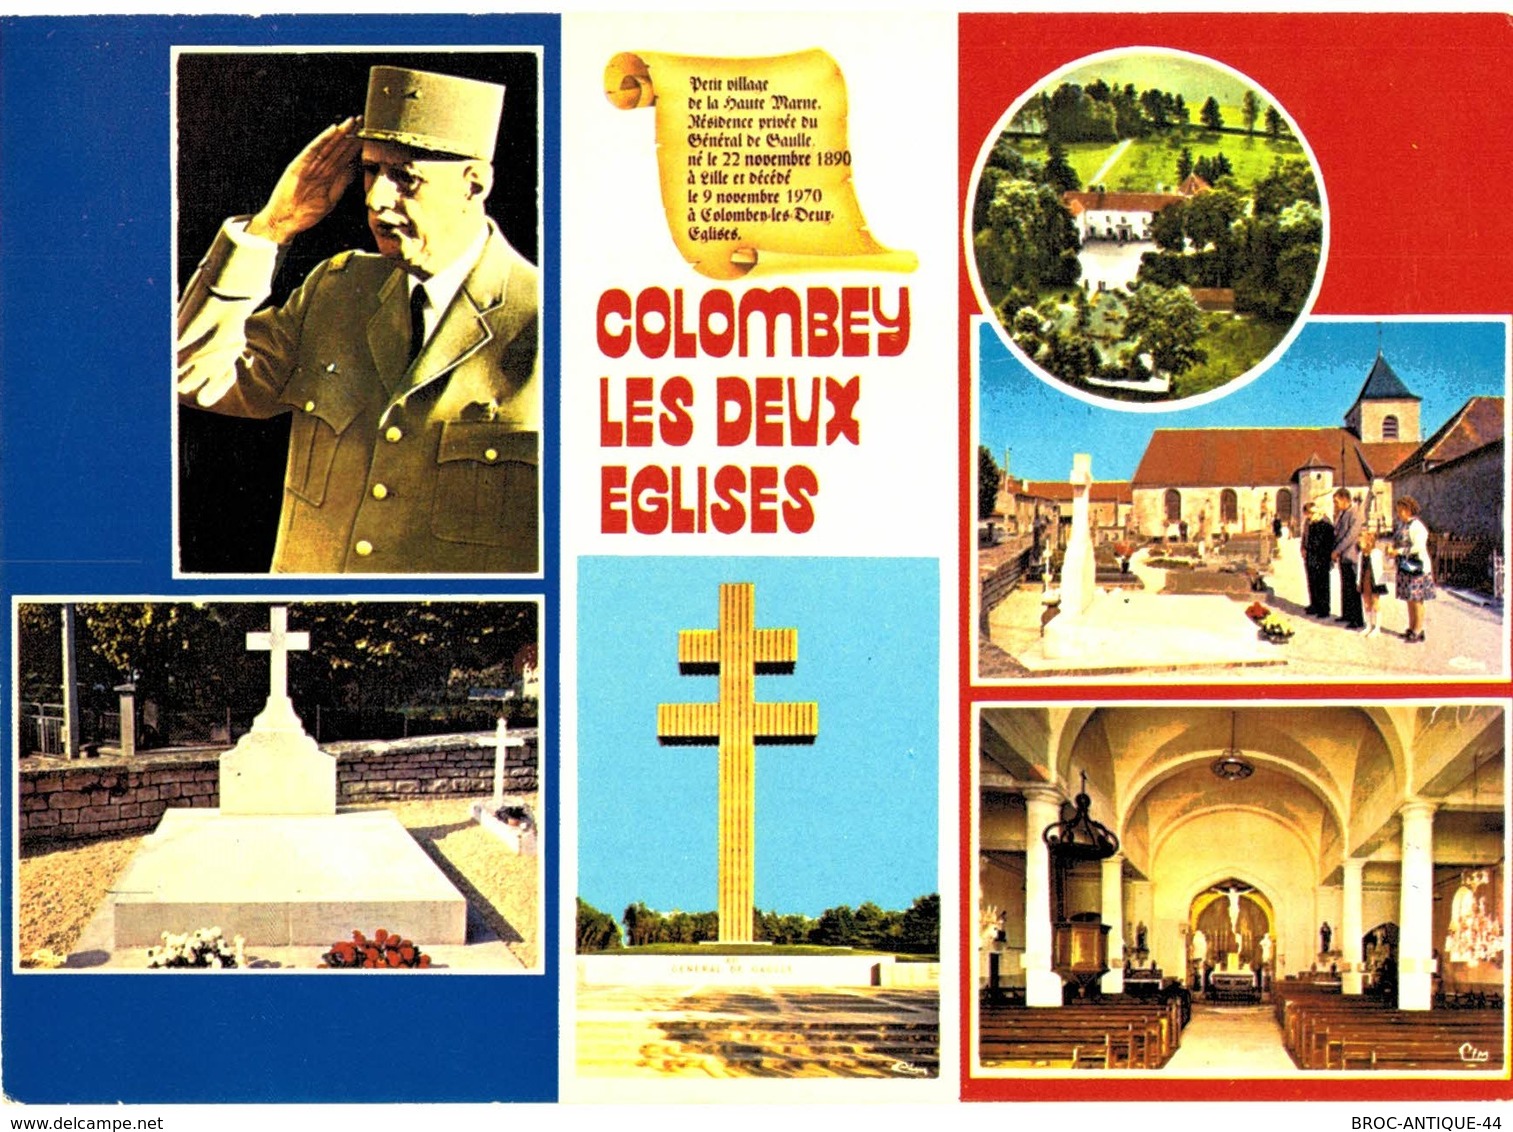 LOT N°1238 - LOT DE 60 CARTES DE COLOMBEY-LES-DEUX-EGLISES ETDU Gal DE GAULLE +CARTE LETTRE DERNIER SCAN + JOLIES PHOTOS